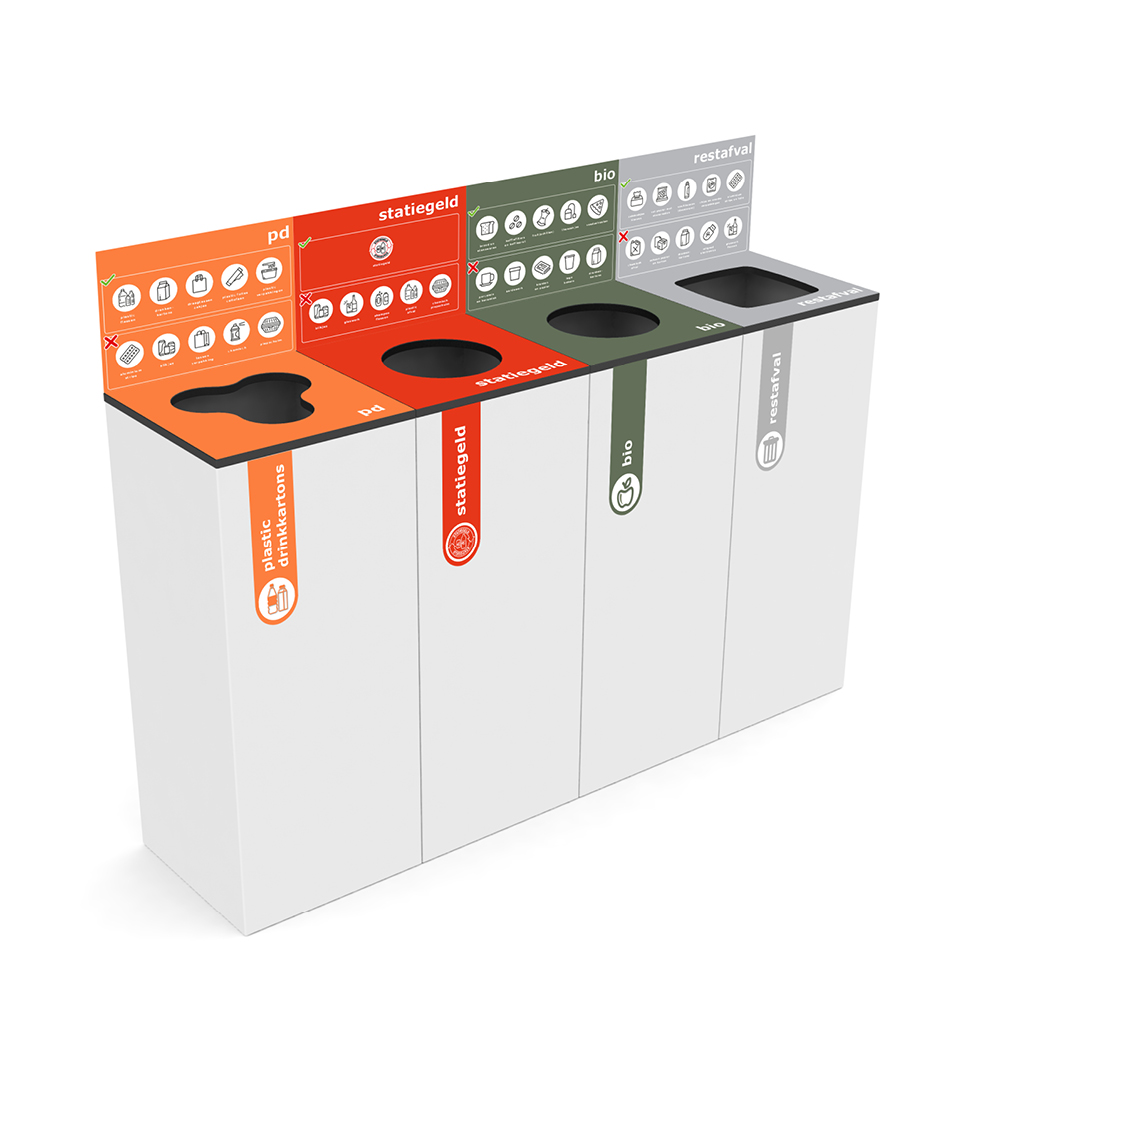 Modulaire afvalbakken prullenbakken kantoor onderwijs afval gescheiden inzamelen kantoor school